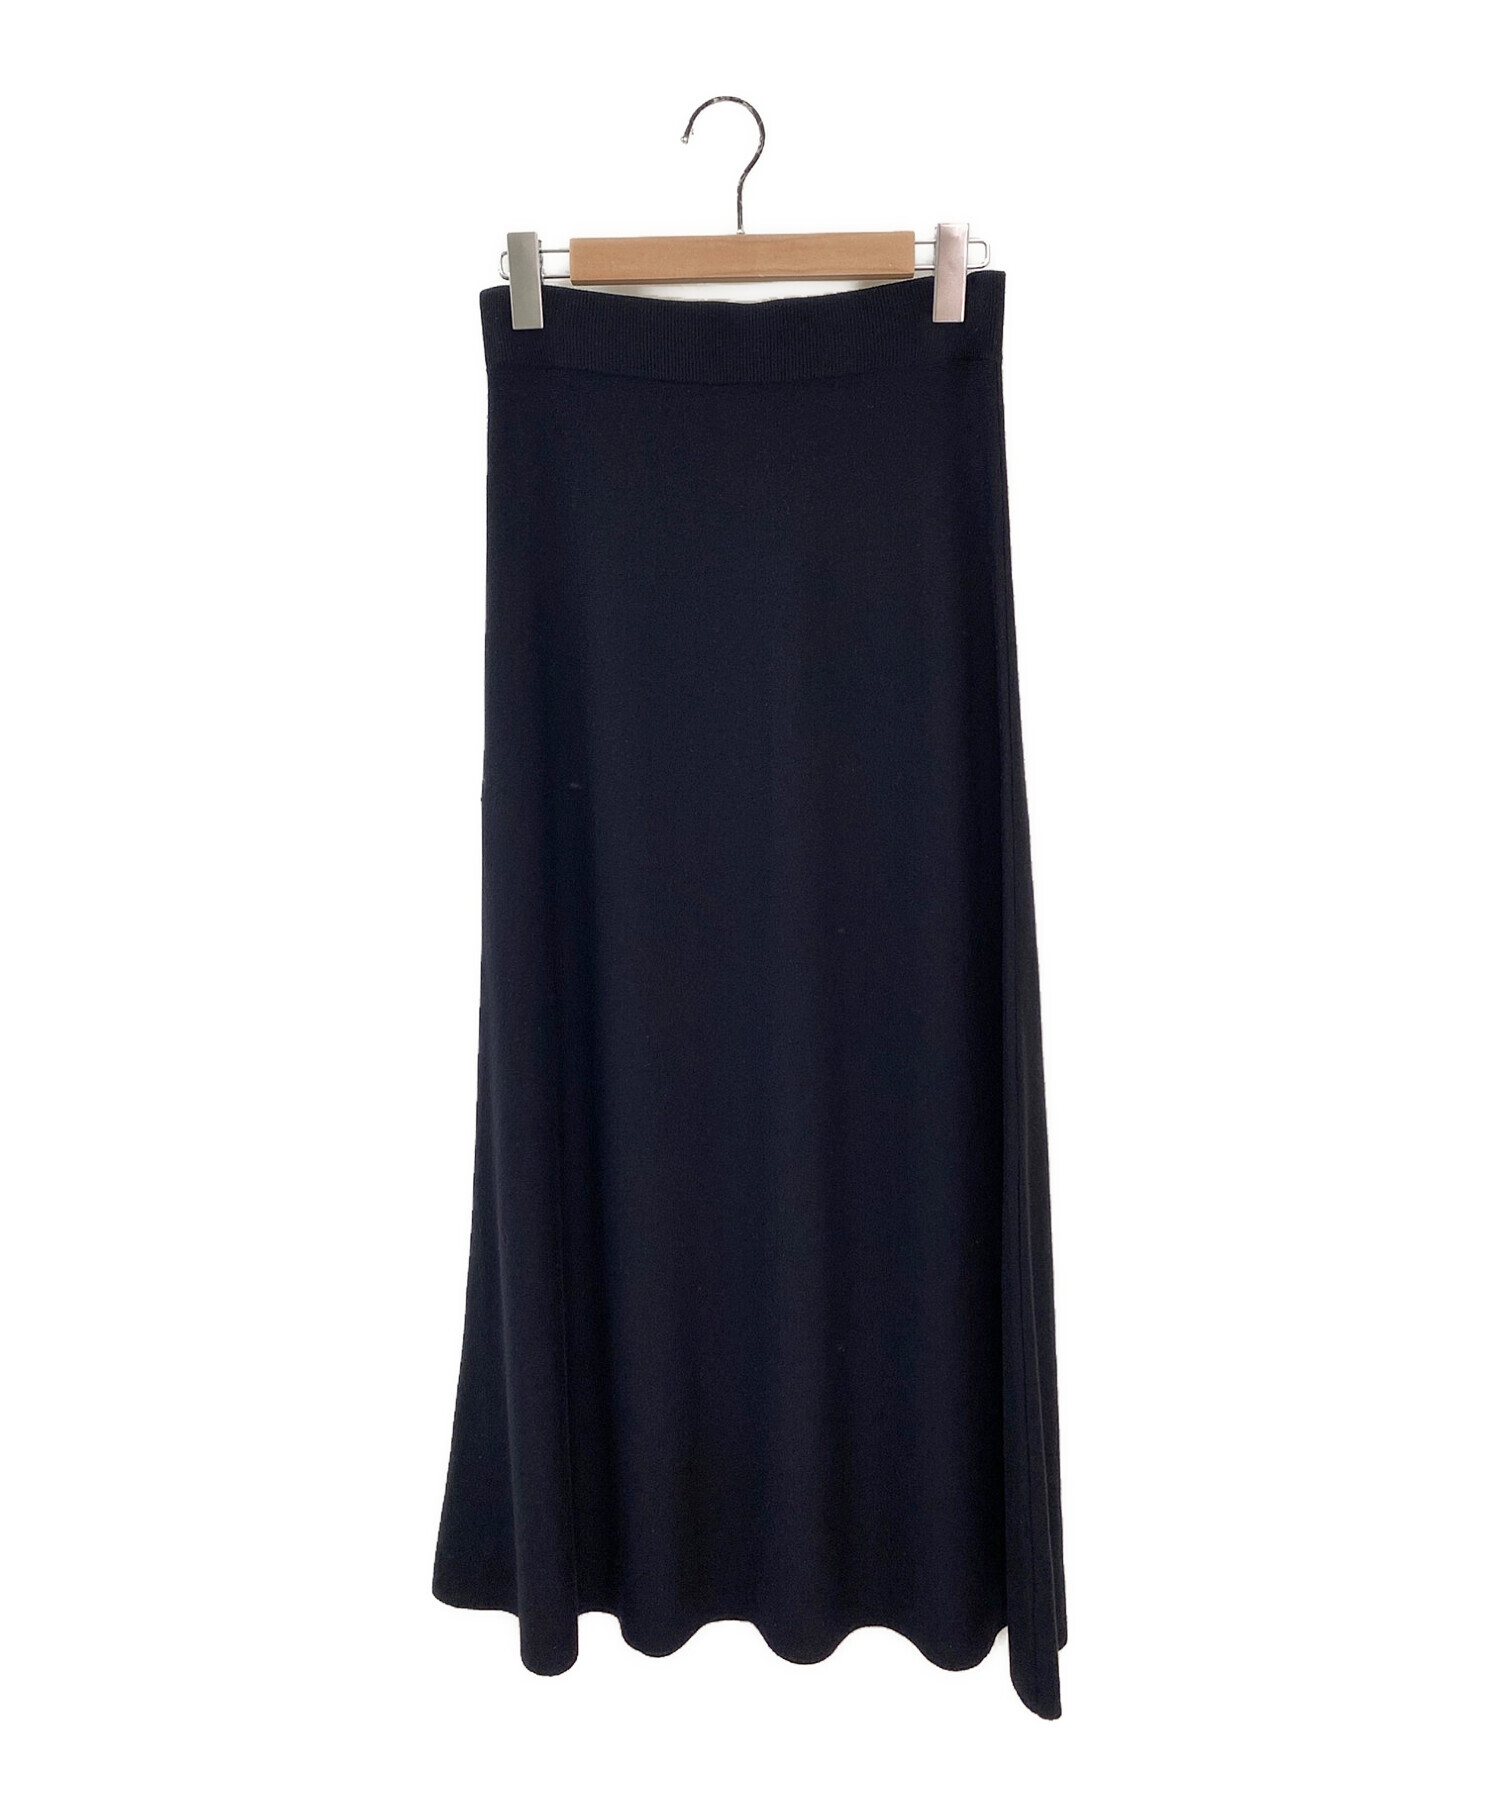 DEUXIEME CLASSE (ドゥーズィエム クラス) refined スカート ブラック サイズ:38